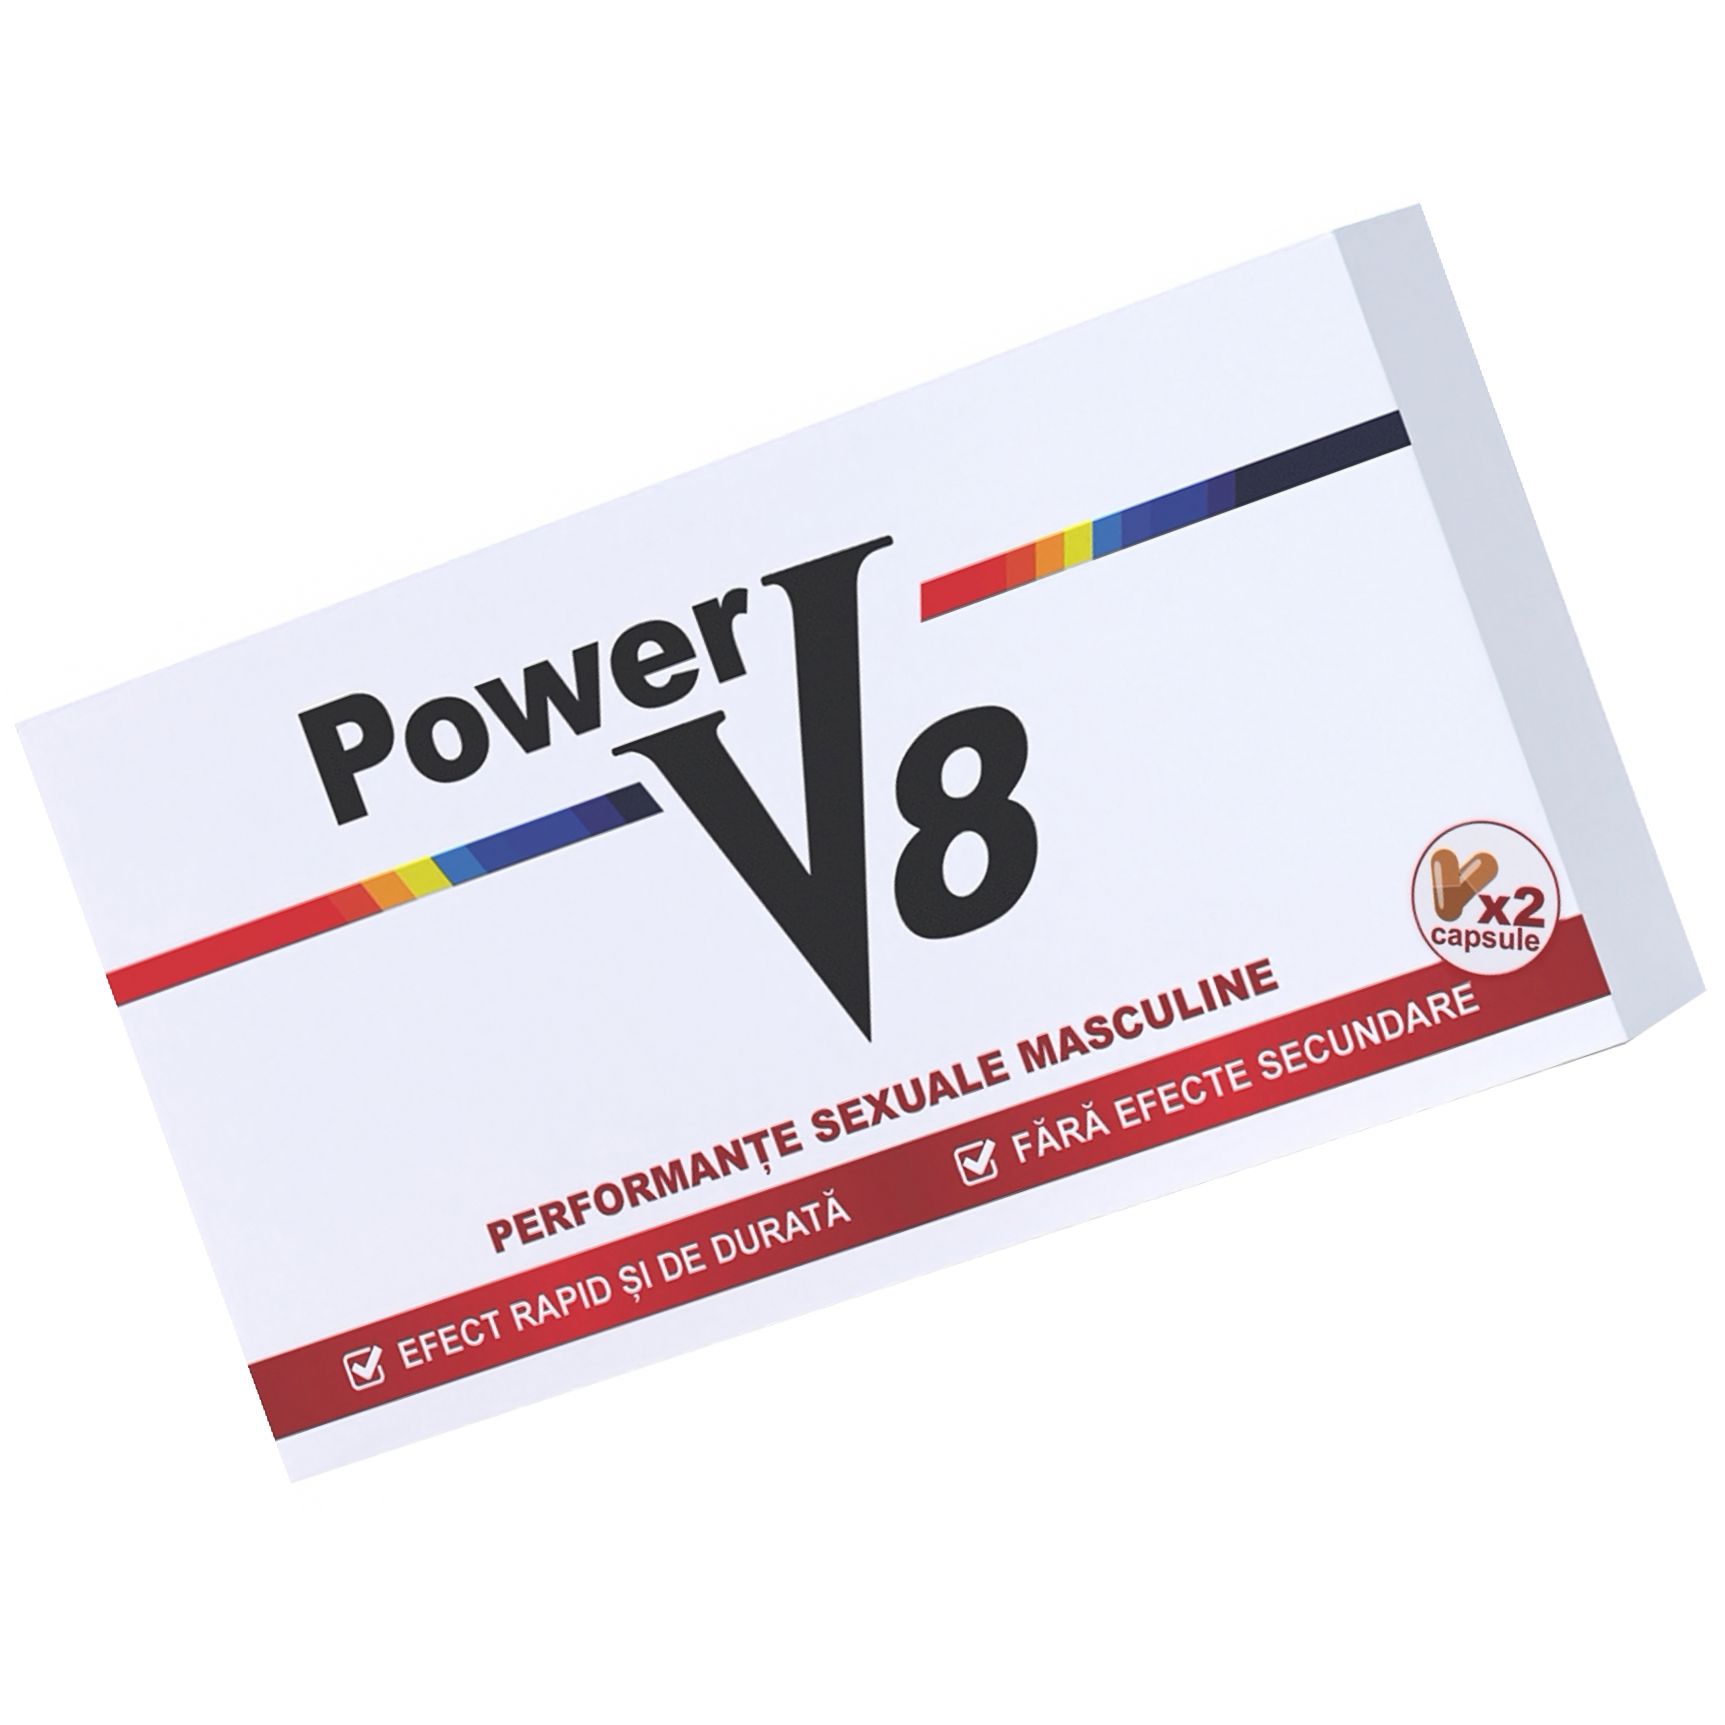 Pastile Pentru Erectie Si Potenta Power V8 2cps